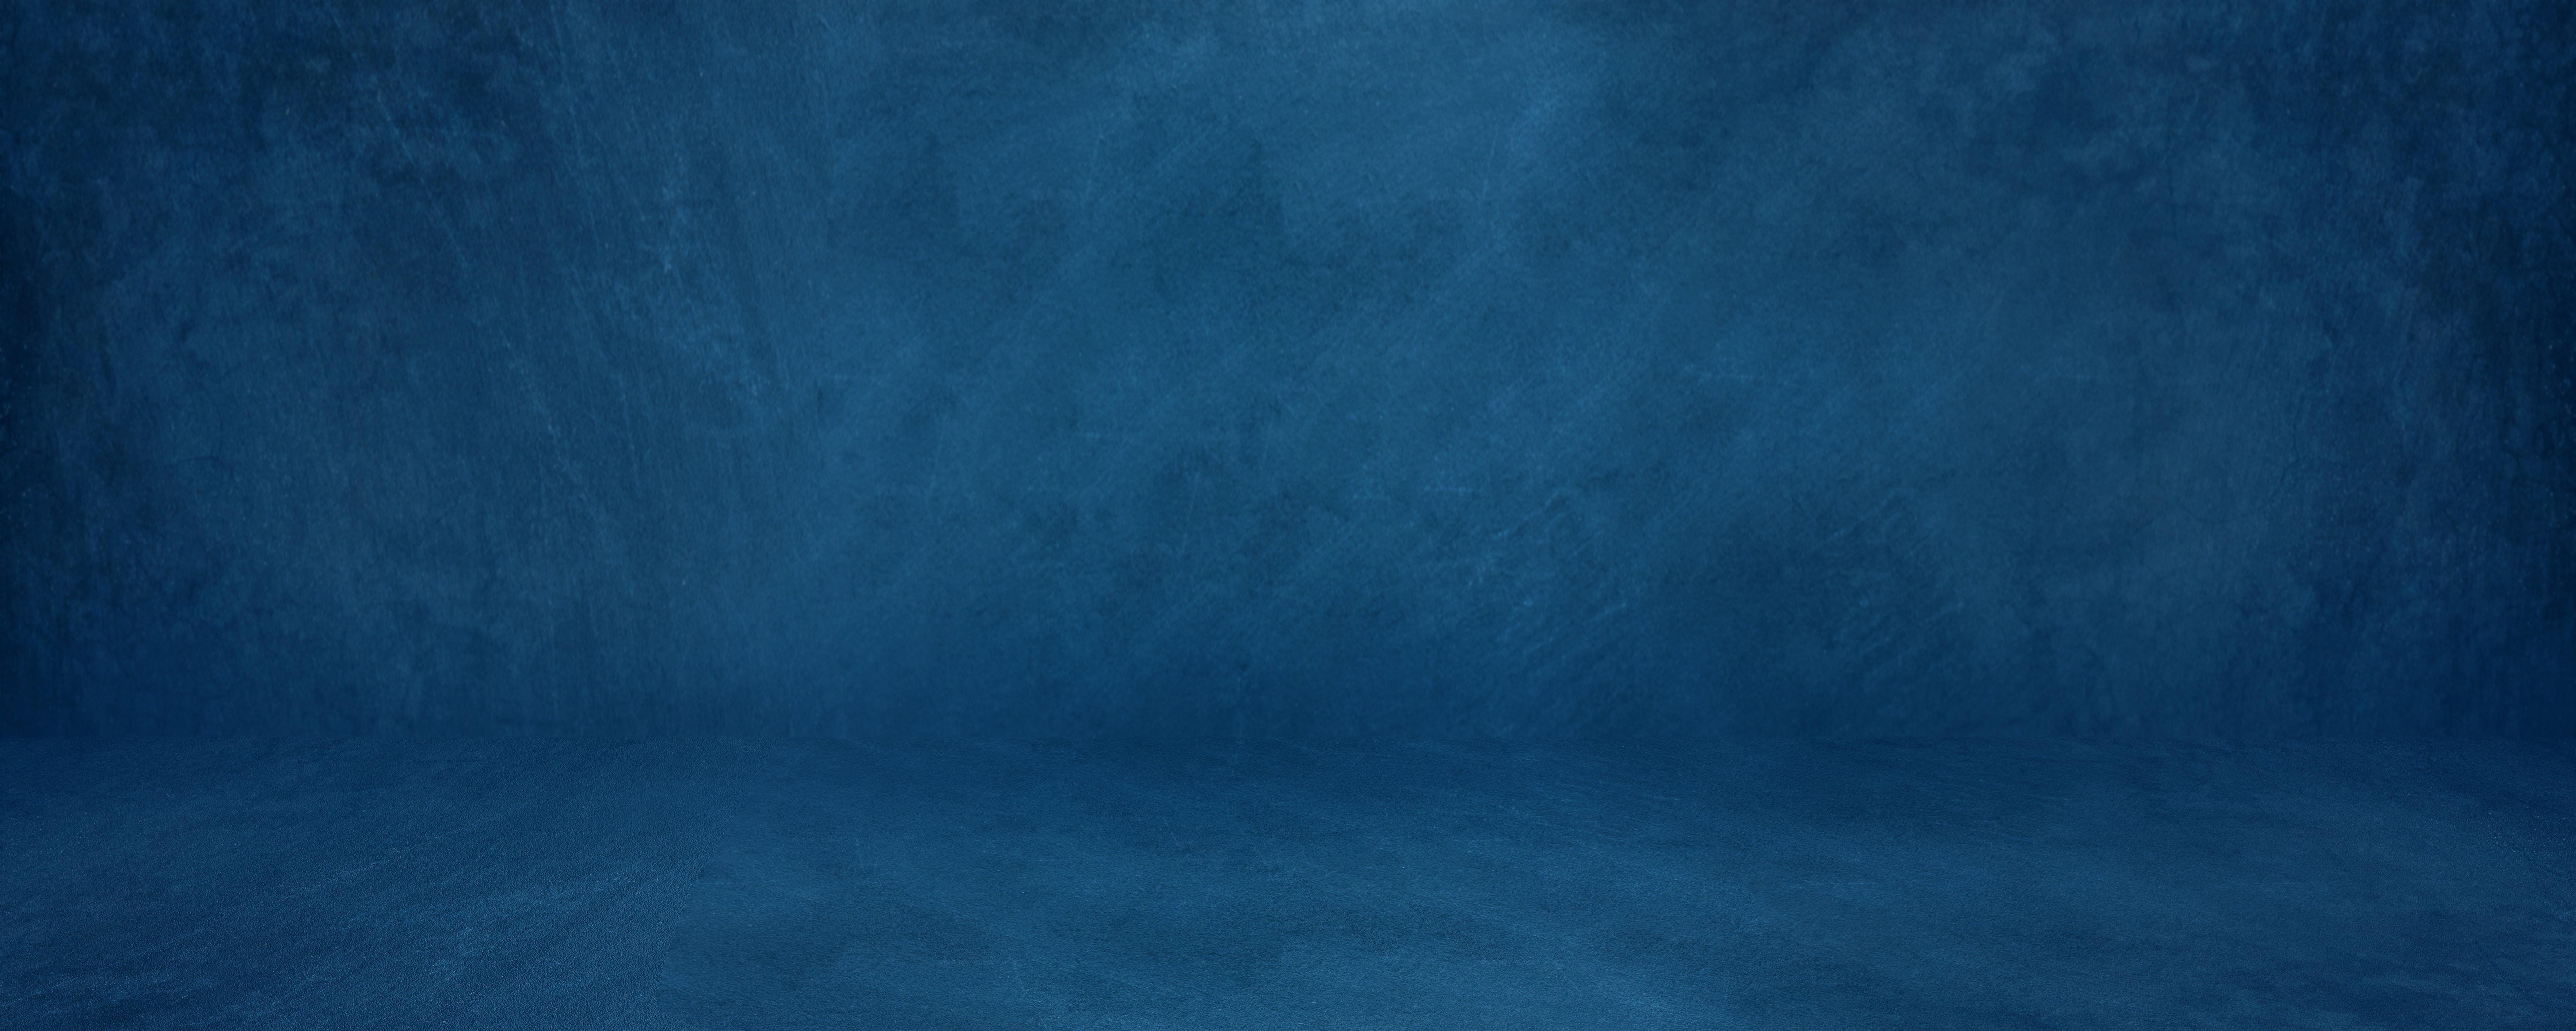 Dark Blue Banner Background